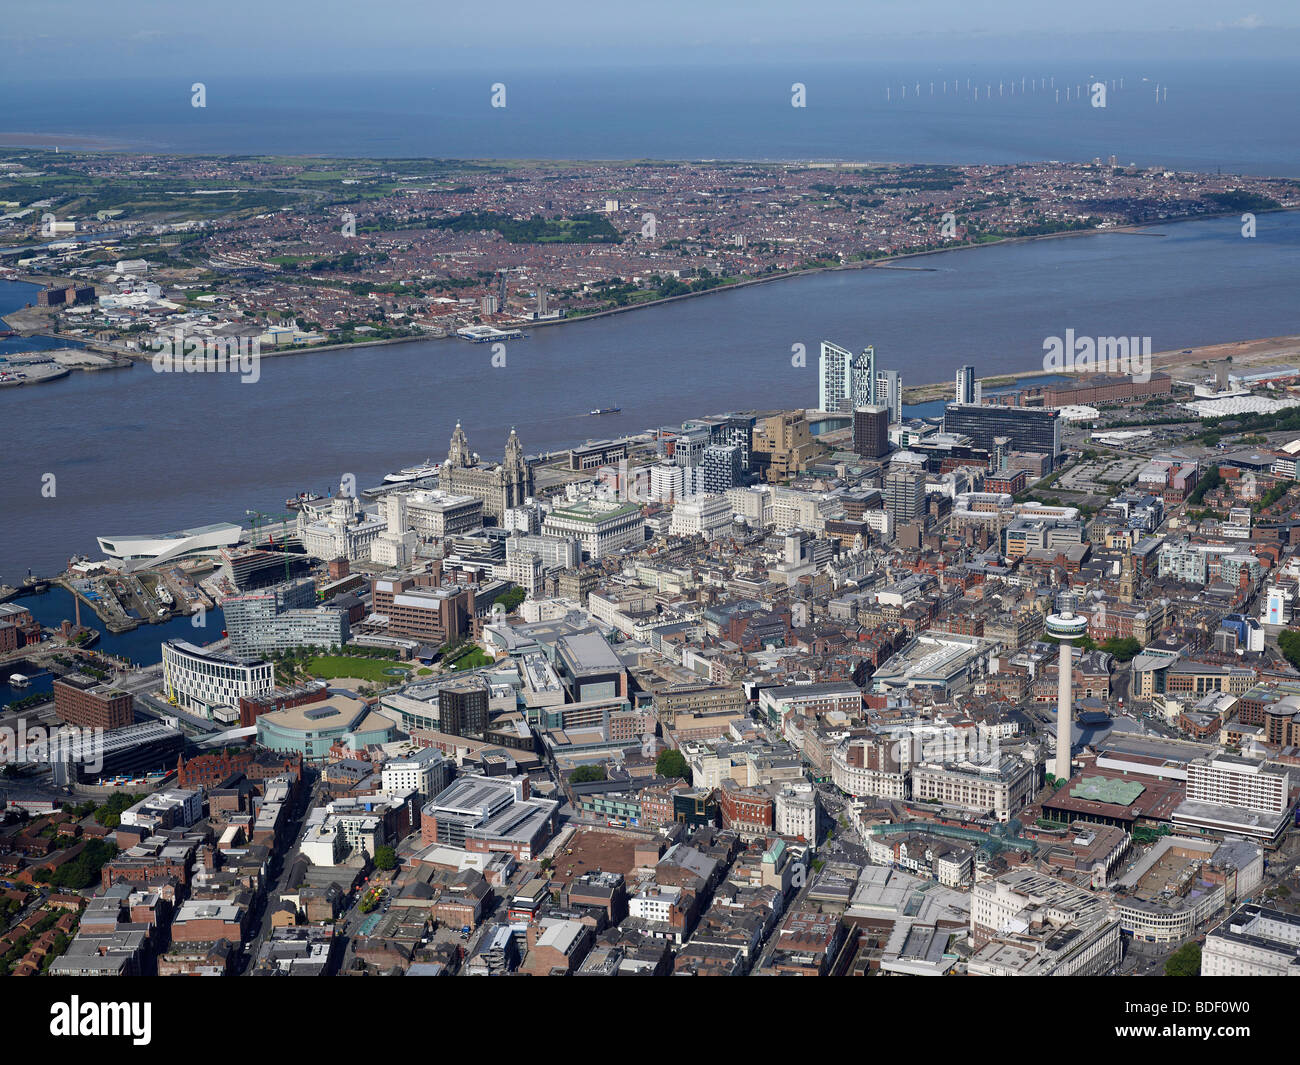 Vue aérienne de Liverpool, au nord ouest de l'Angleterre, l'été 2009, à la recherche de l'autre côté de la rivière Mersey avec la mer d'Irlande derrière Banque D'Images